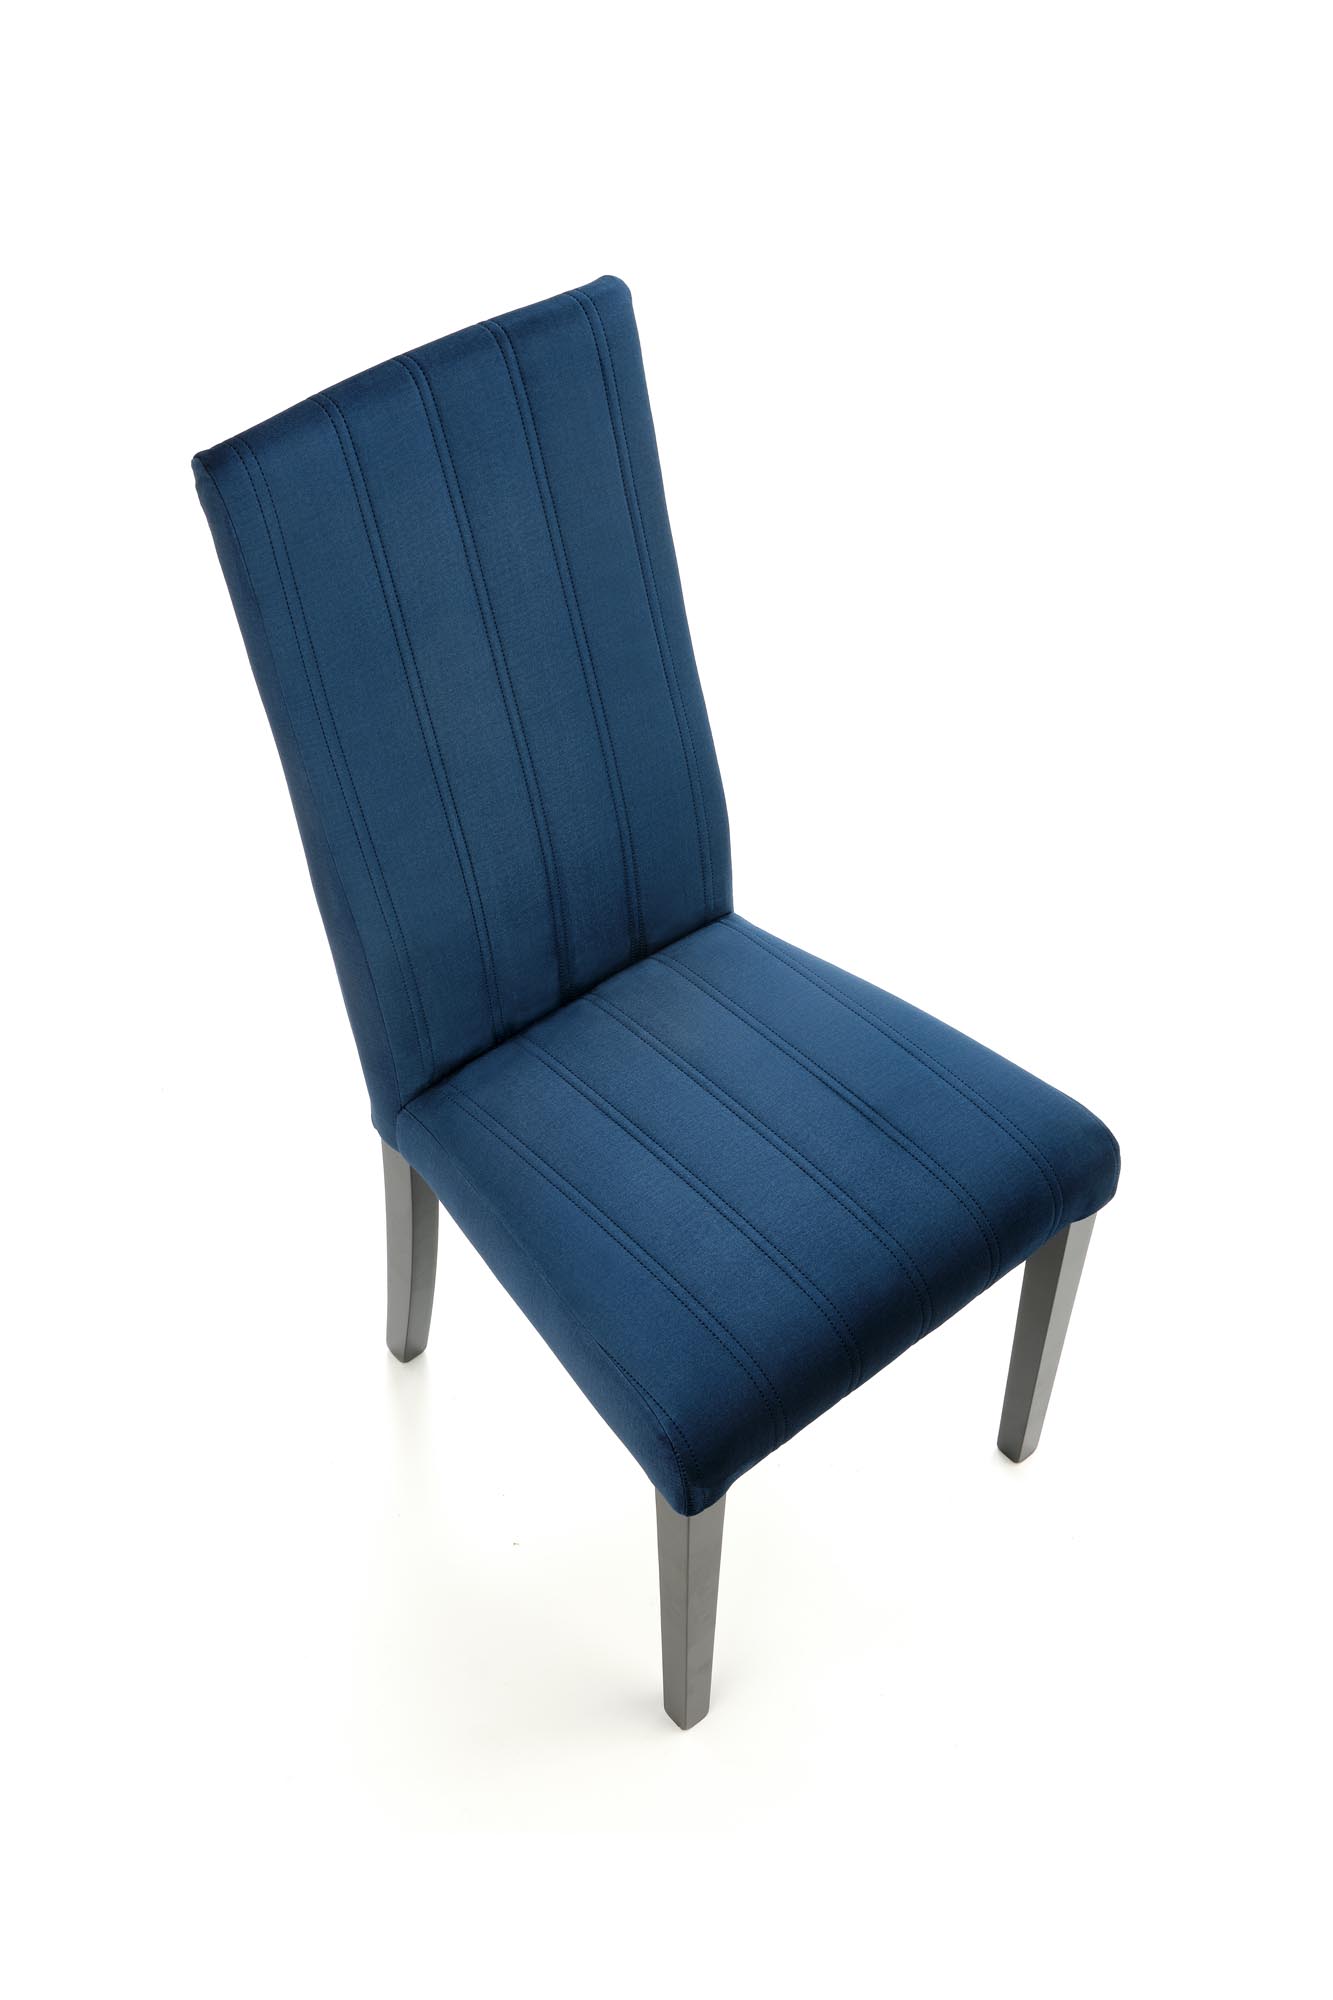 DIEGO 2 krzesło czarny / tap. velvet pikowany Pasy - MONOLITH 77 (granatowy) diego 2 krzesło czarny / tap. velvet pikowany pasy - monolith 77 (granatowy)